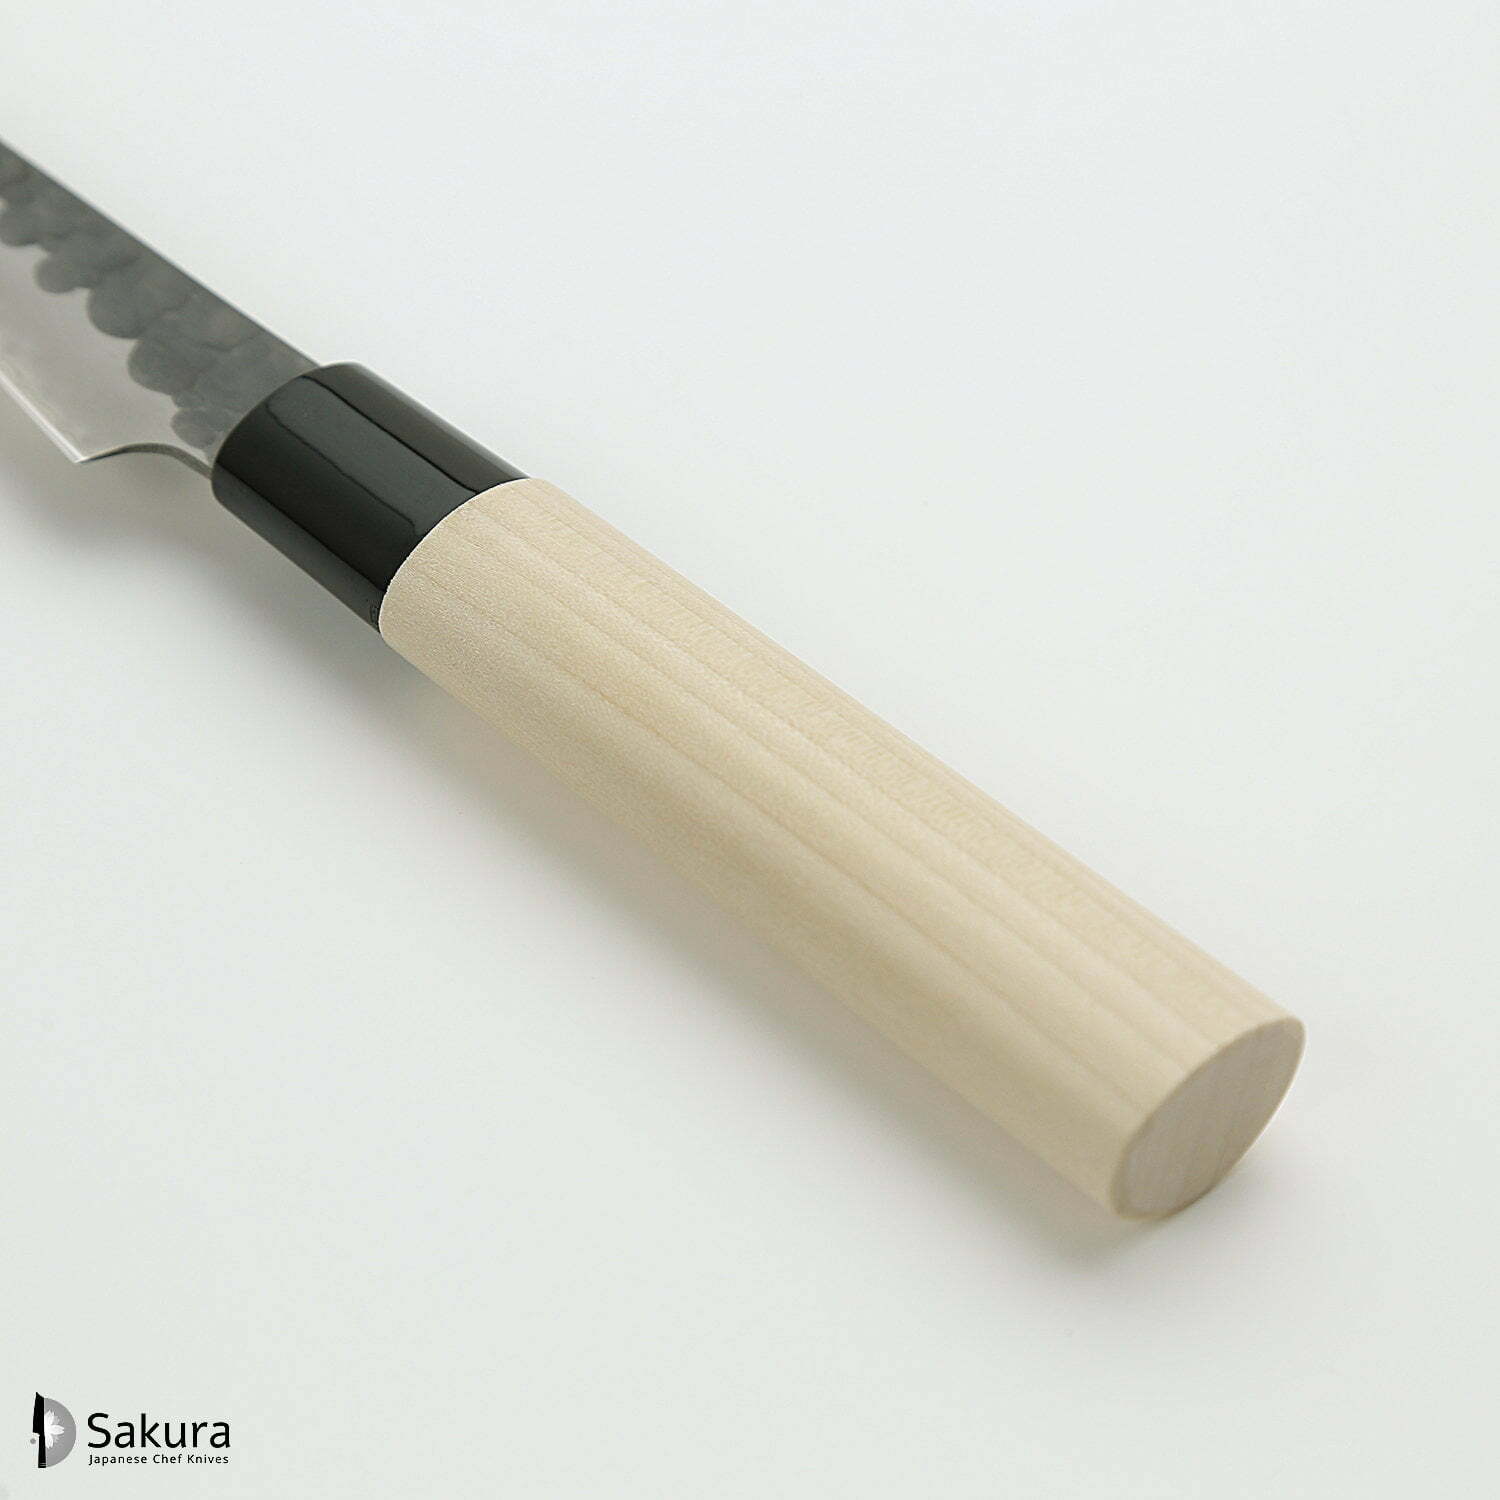 סכין עזר קטנה רב-תכליתית פֶּטִי 90מ״מ מחוזקת 3 שכבות: פלדת פחמן יפנית VG-10 עטופה פלדת אל-חלד גימור קורואיצ׳י שחור עם ריקוע פטיש טוג׳ירו יפן